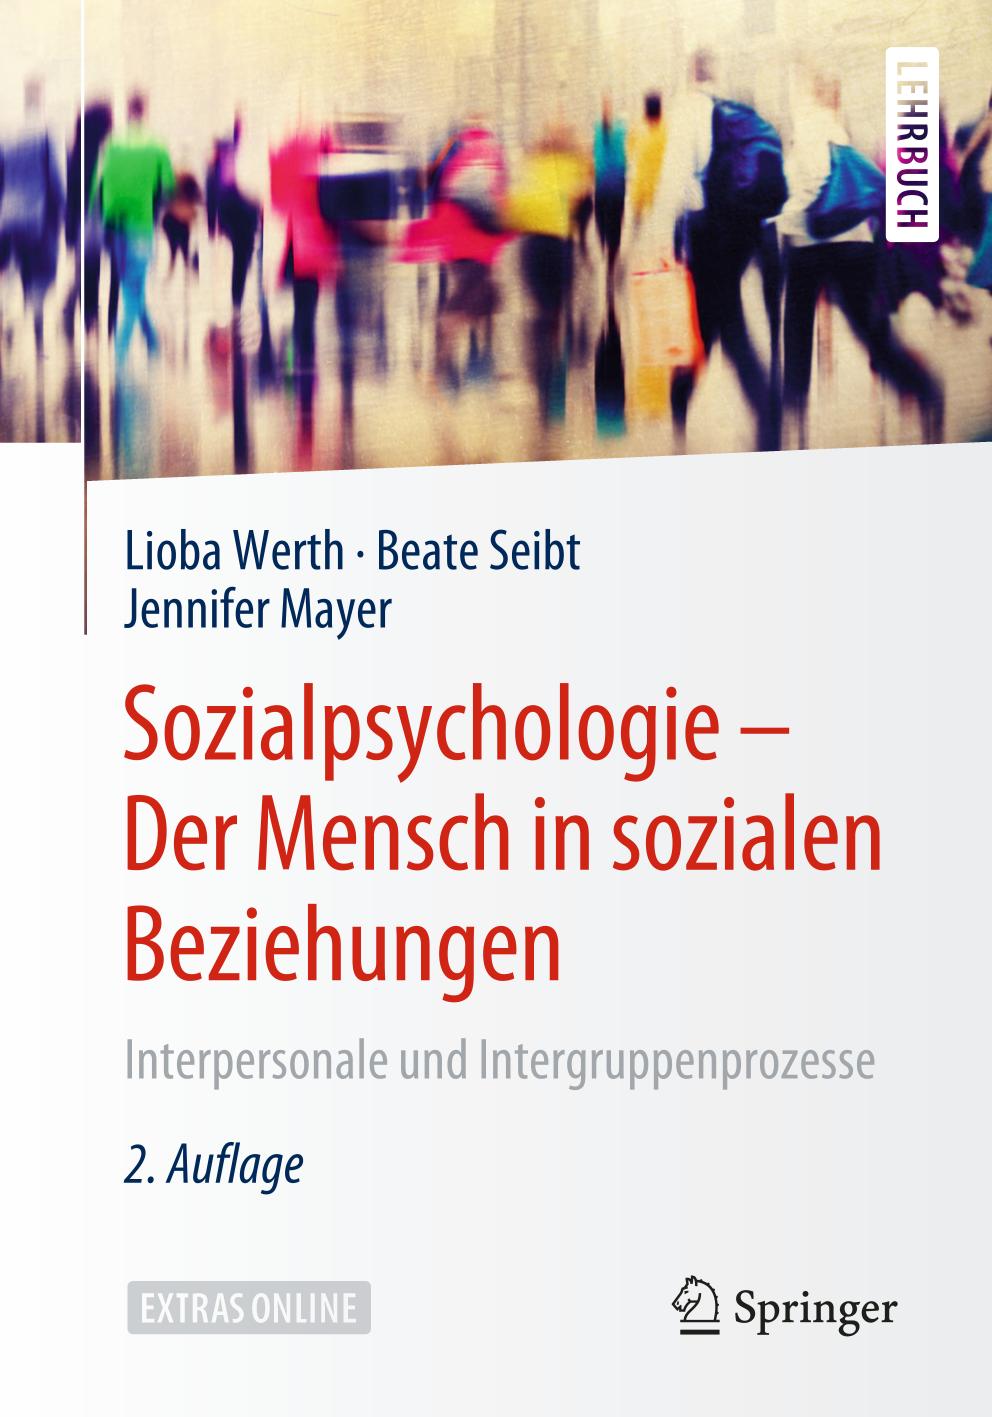 Sozialpsychologie - Der Mensch in sozialen Beziehungen Interpersonale und Intergruppenprozesse